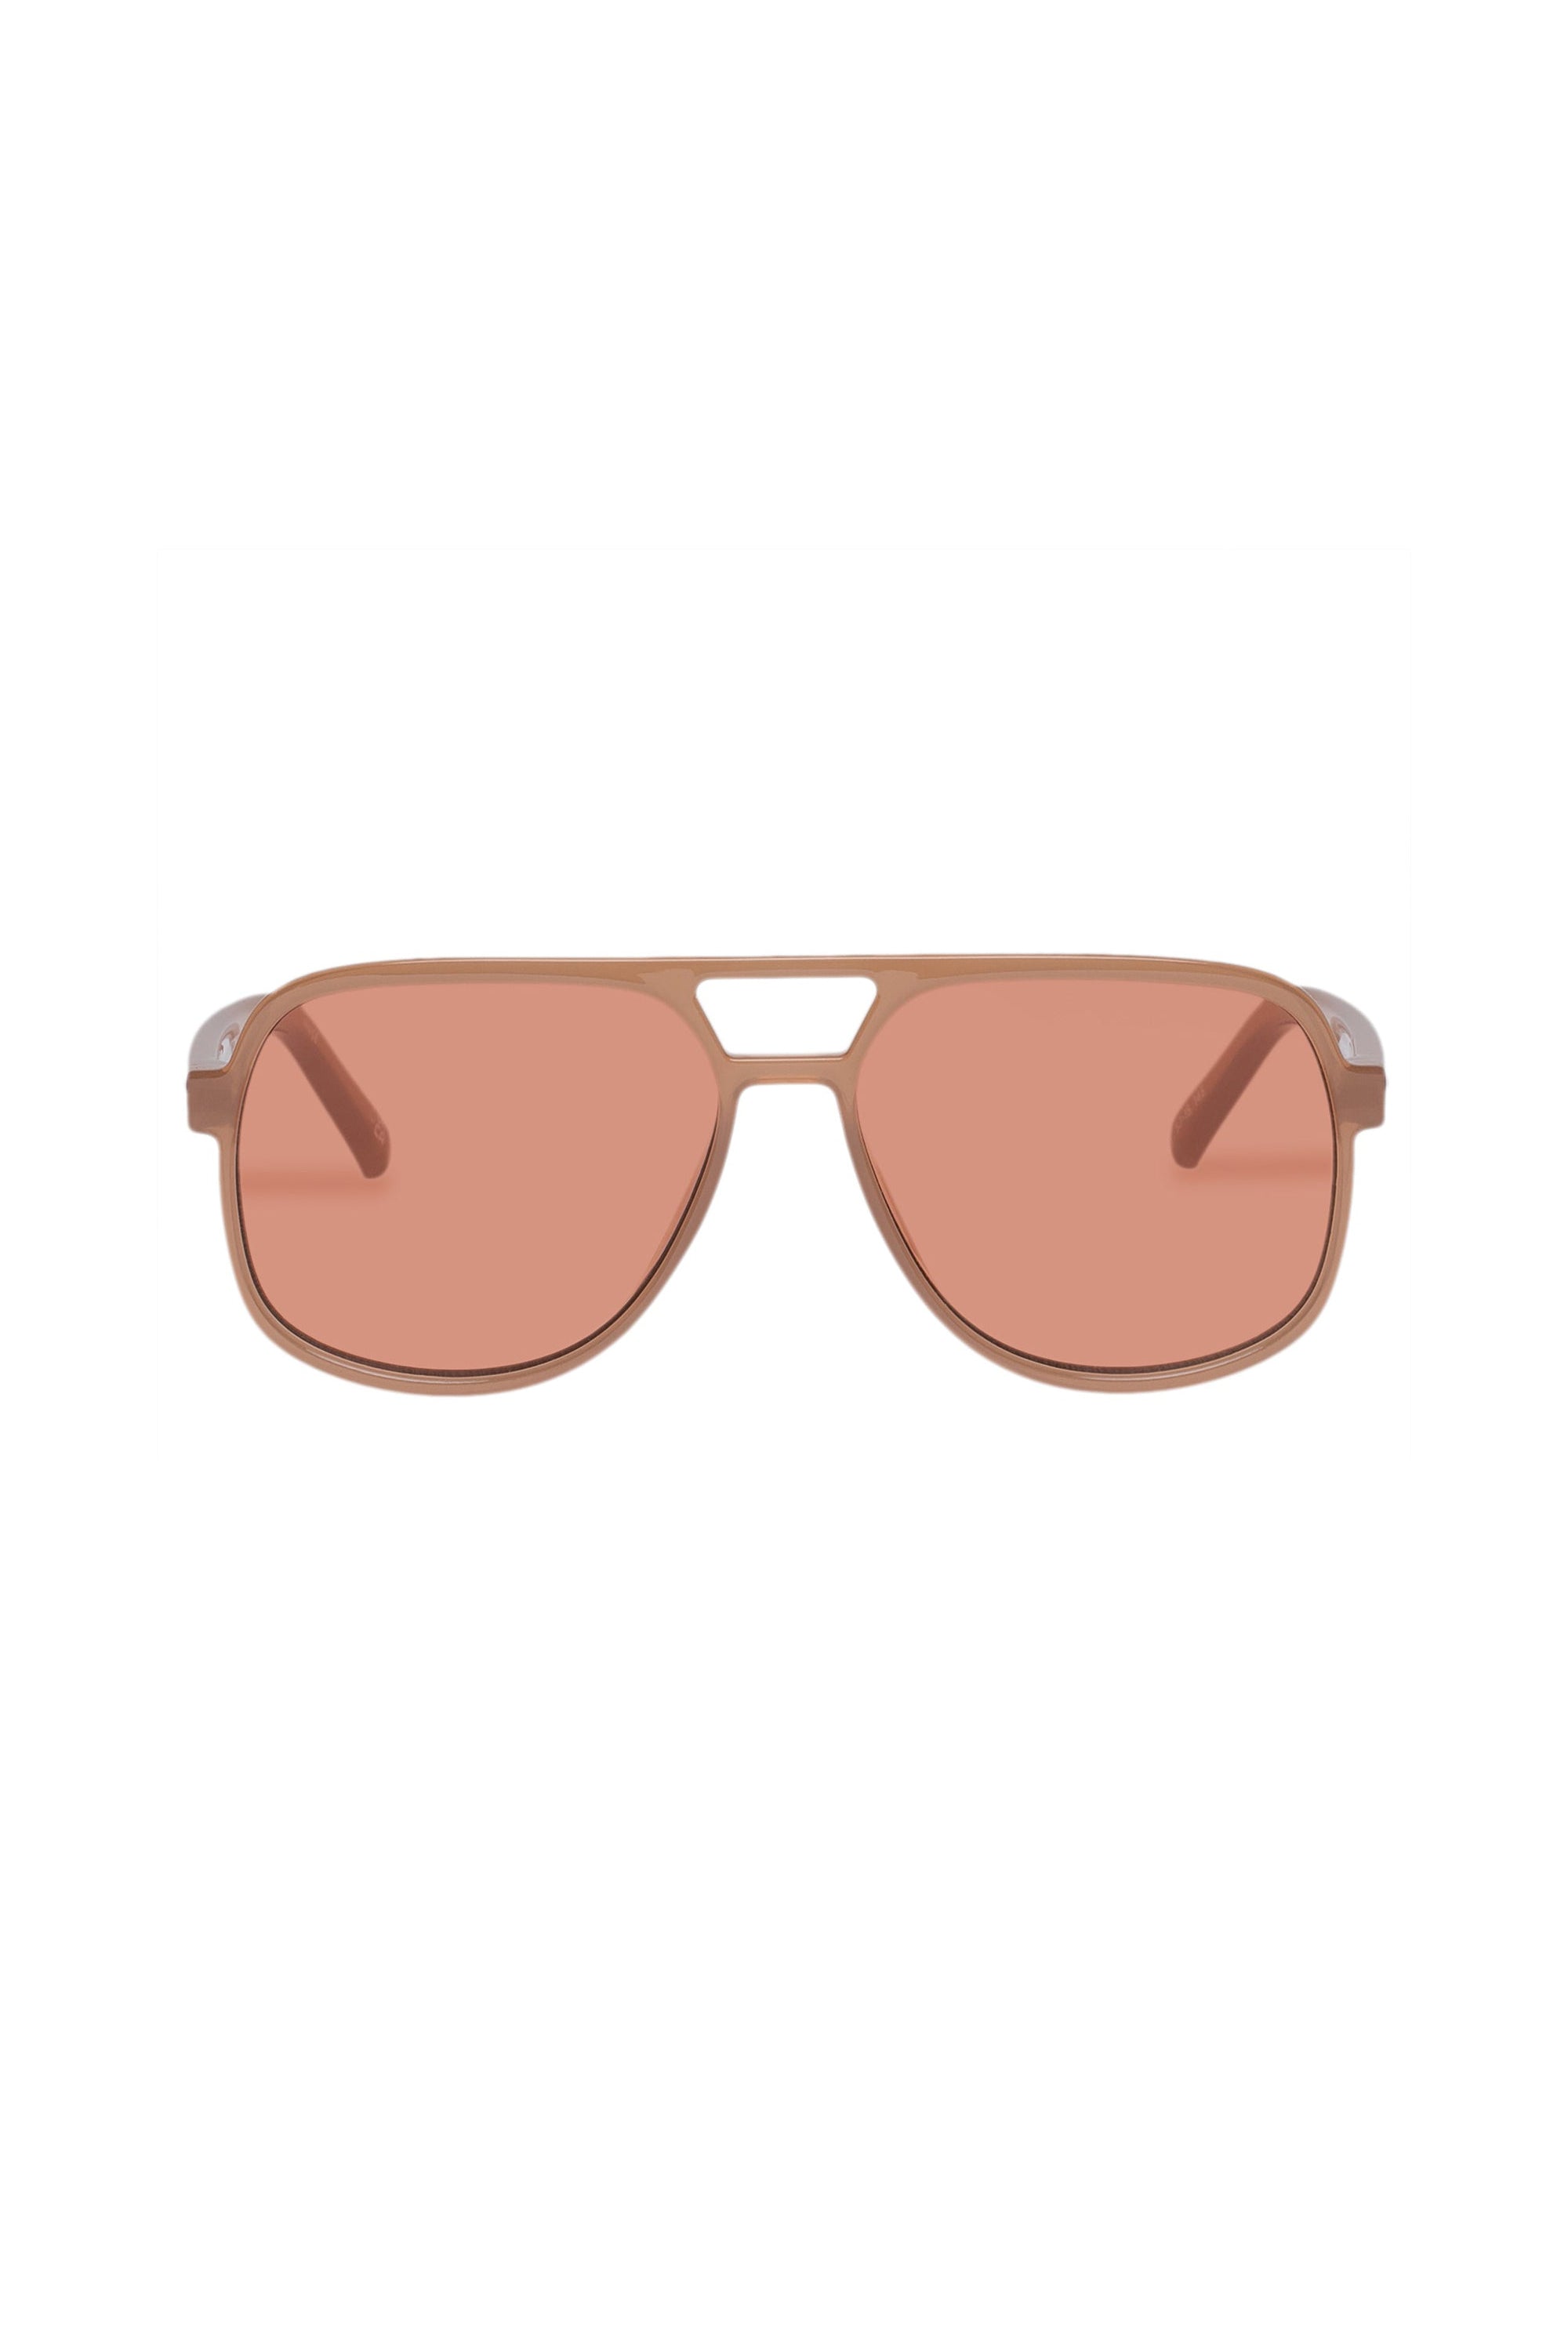 Trailbreaker Sunglasses - Clay // Le Sustain